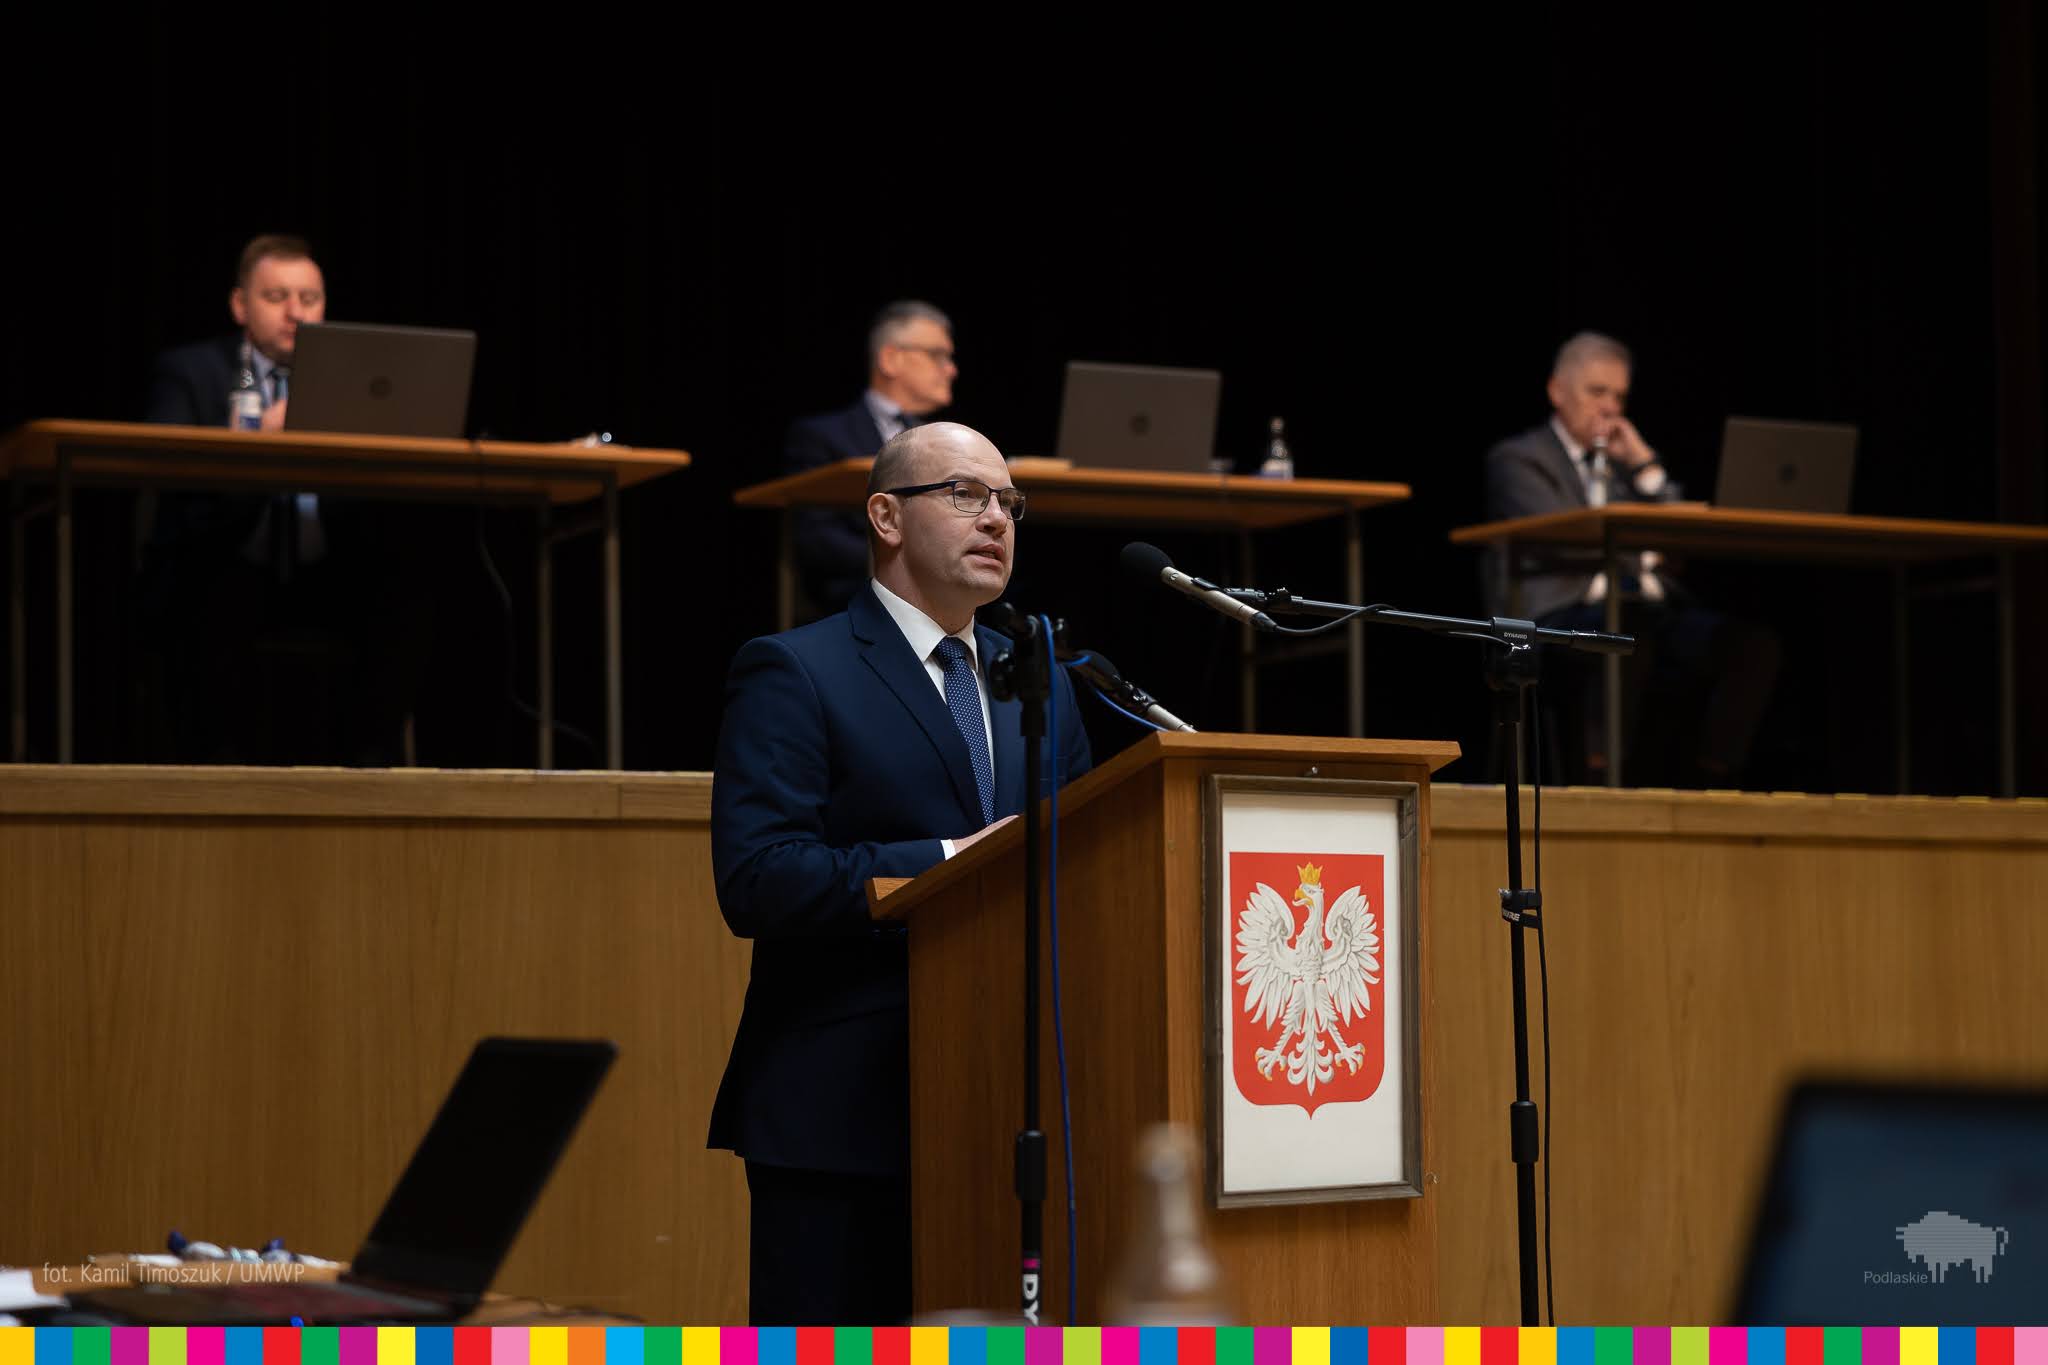 Marszałek Artur Kosicki zabiera głos na mównicy z godłem Polski. W tle za nim widać trzech siedzących meżczyzn